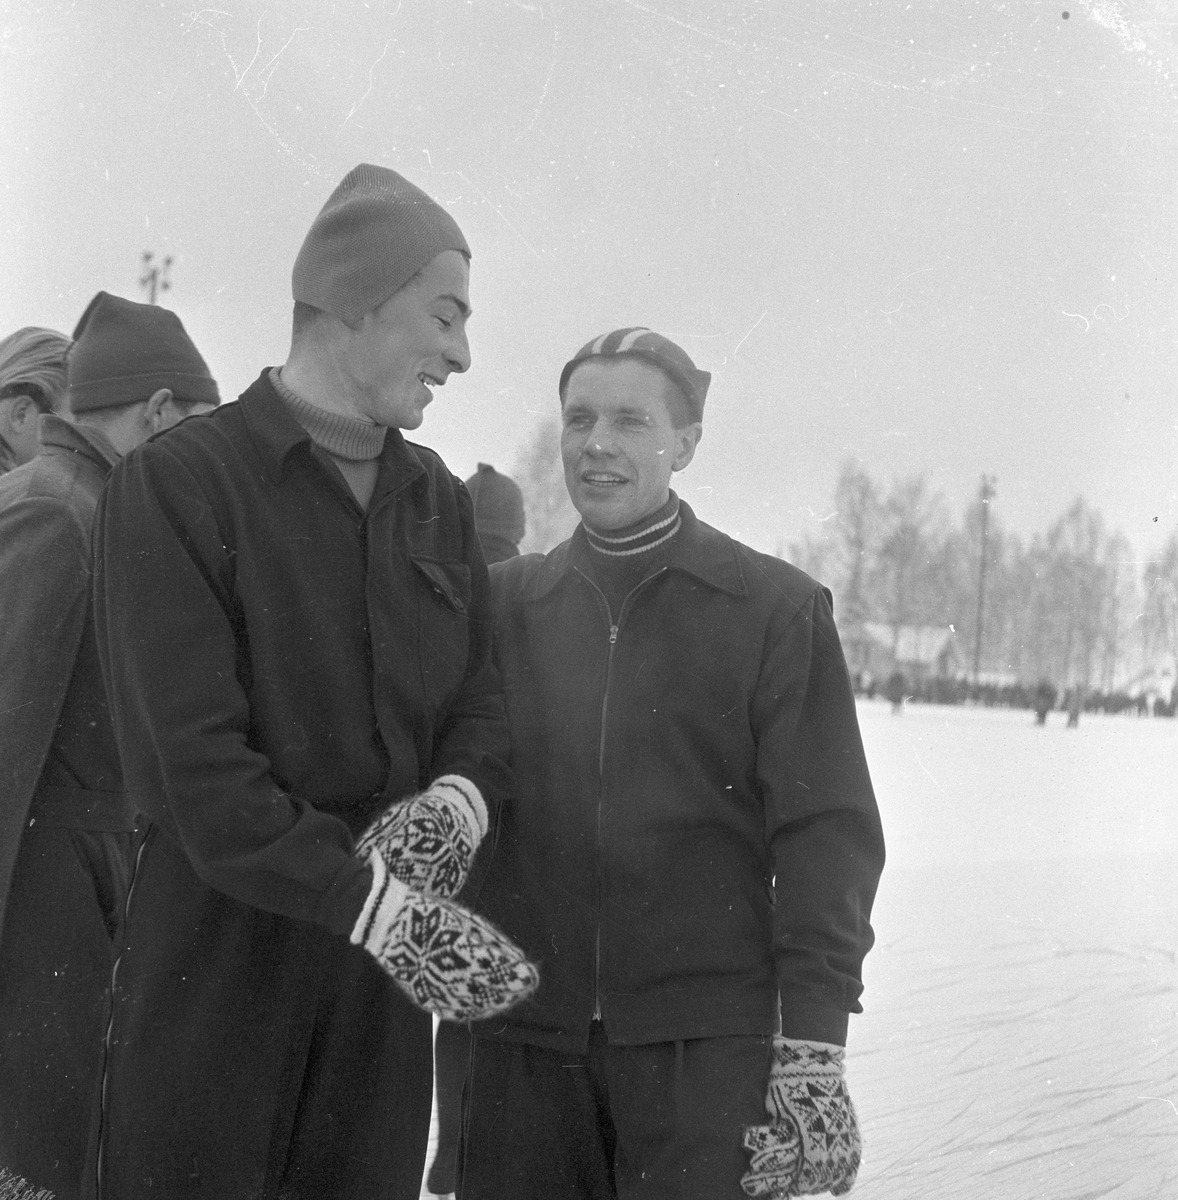 Skøyteløperen Sverre Haugli og Finn Helgesen står på skøytebane og prater.